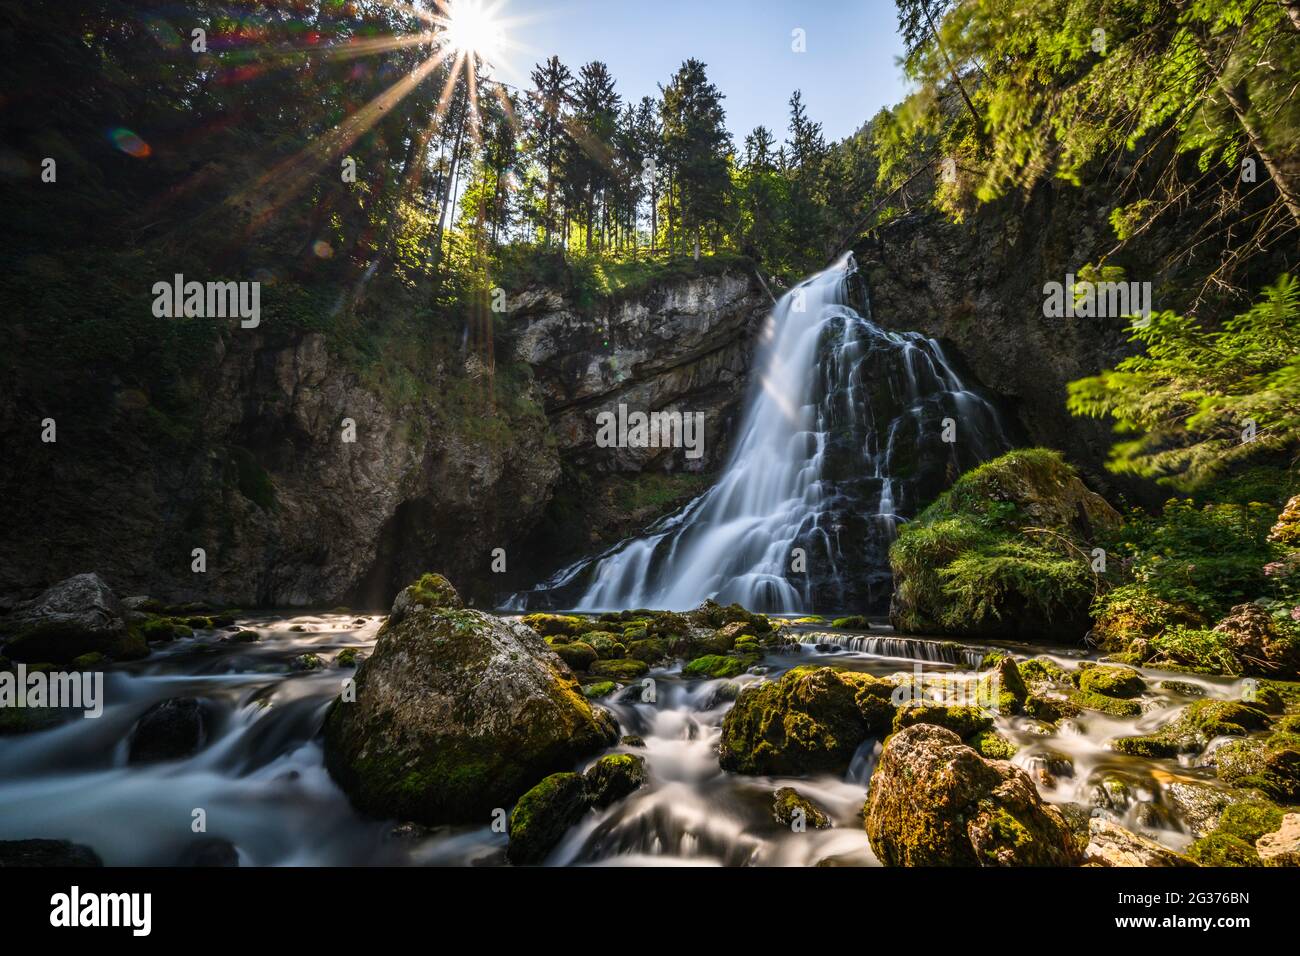 Der Gollinger Wasserfall im Sommer ins ein schönes Familienausflugsziel Banque D'Images